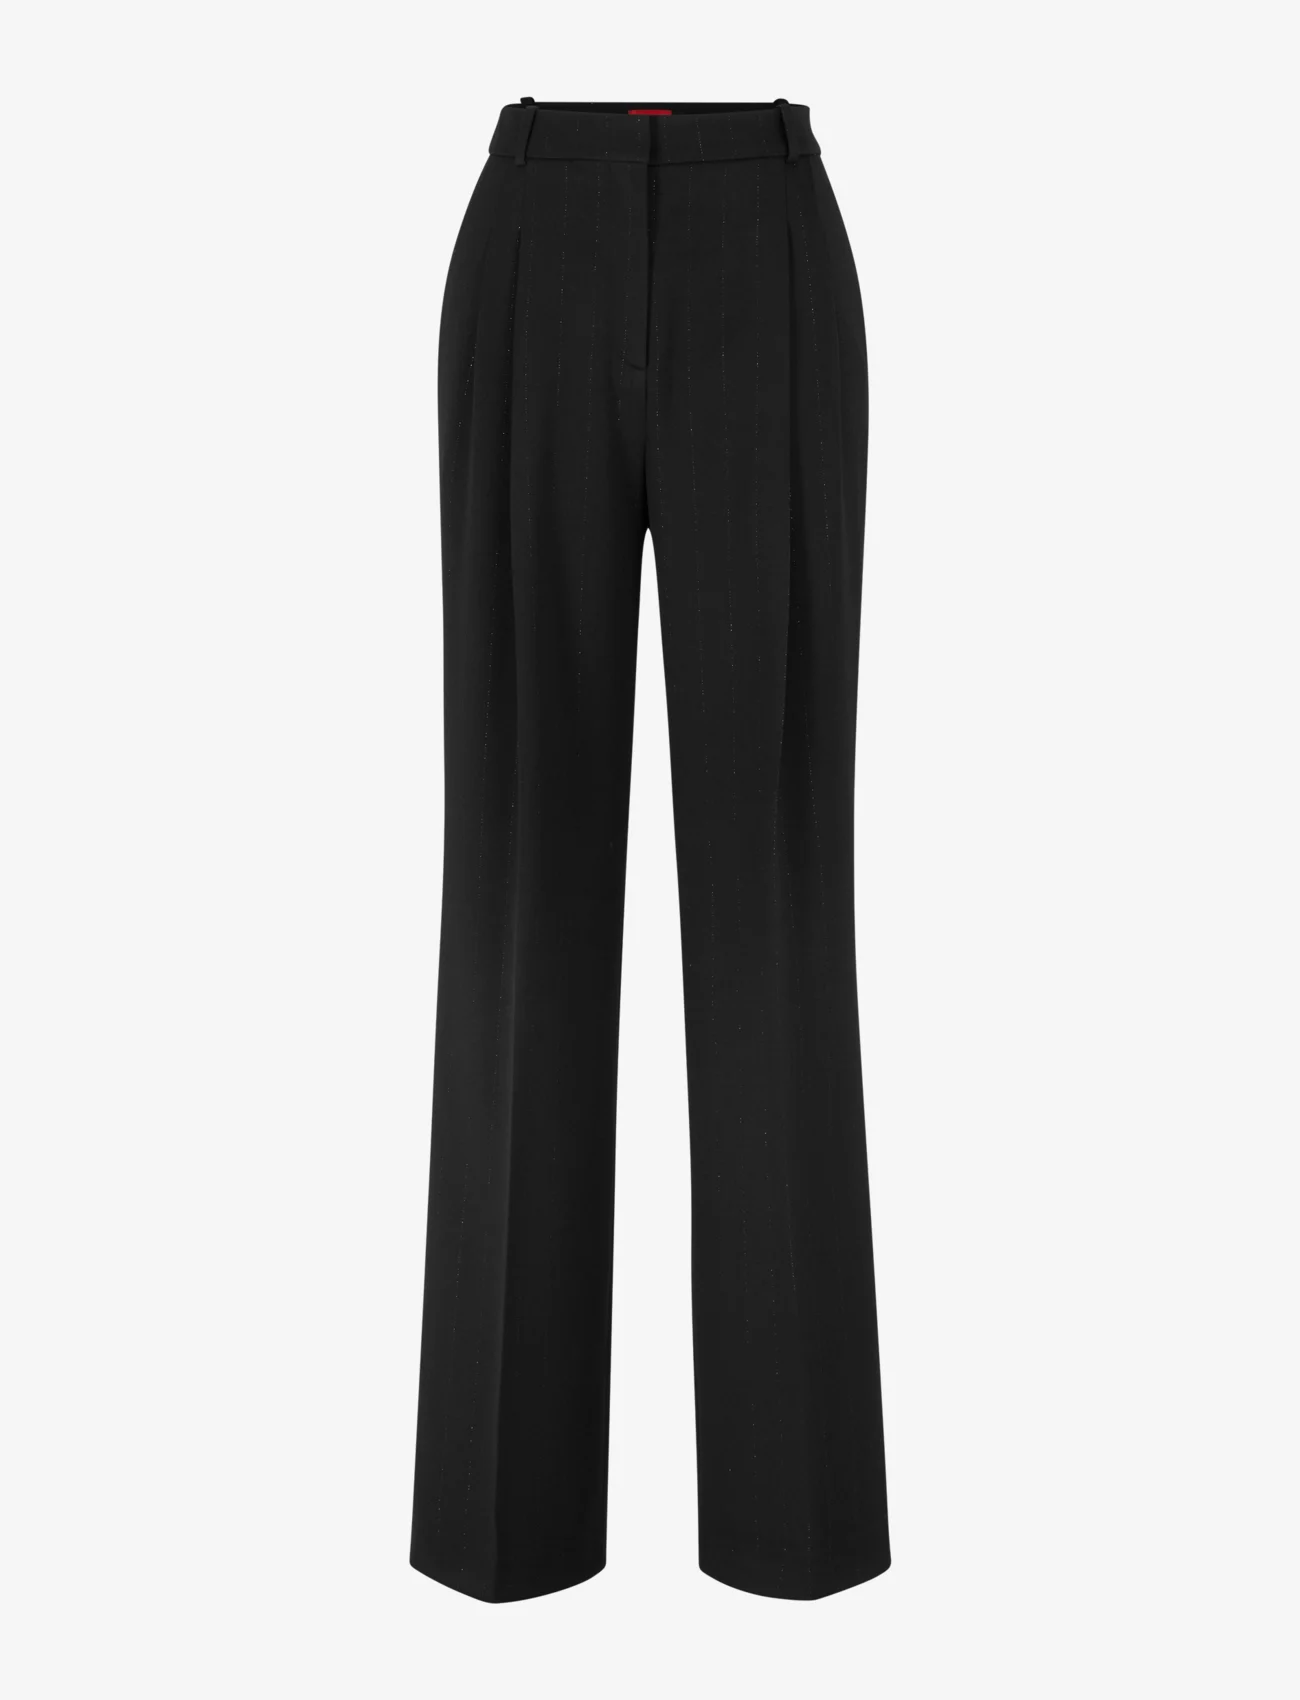 HUGO - Havira - tailored trousers - black - 0